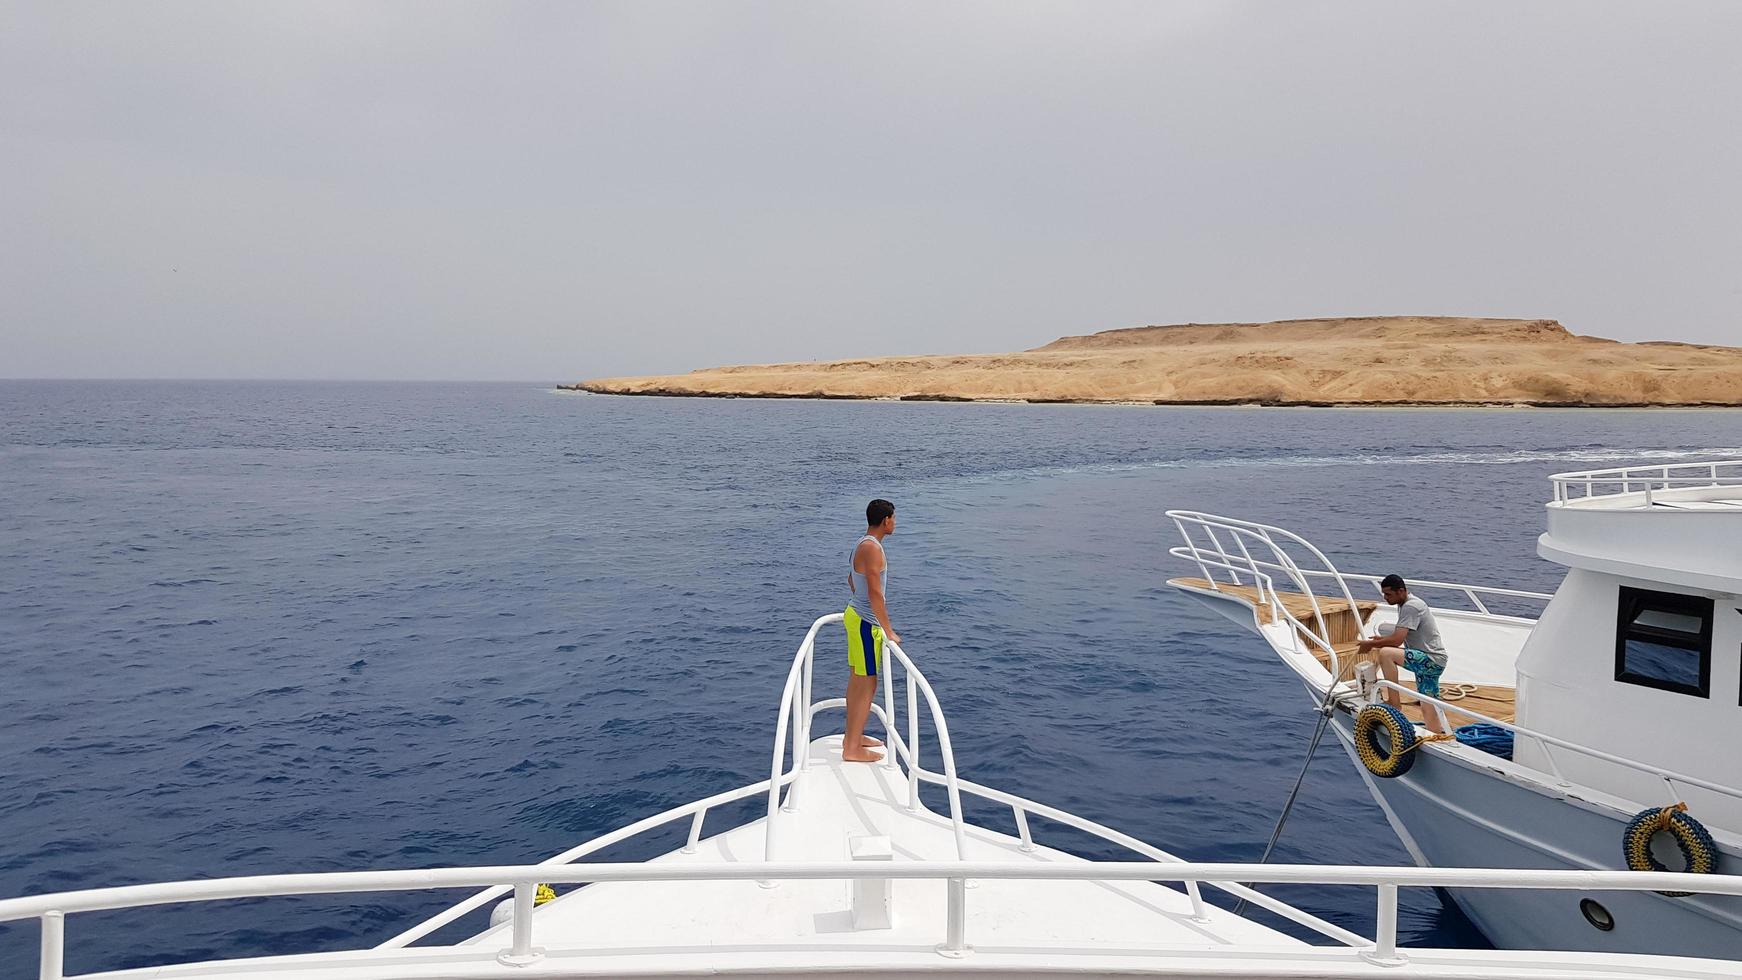 Ägypten, Sharm el Sheikh - 20. September 2019. Eine schöne Aussicht vom Deck eines Kreuzfahrtschiffes im Roten Meer in Ägypten. Landschaft der ägyptischen Felsenküste der Stadt mit einer Yacht. foto